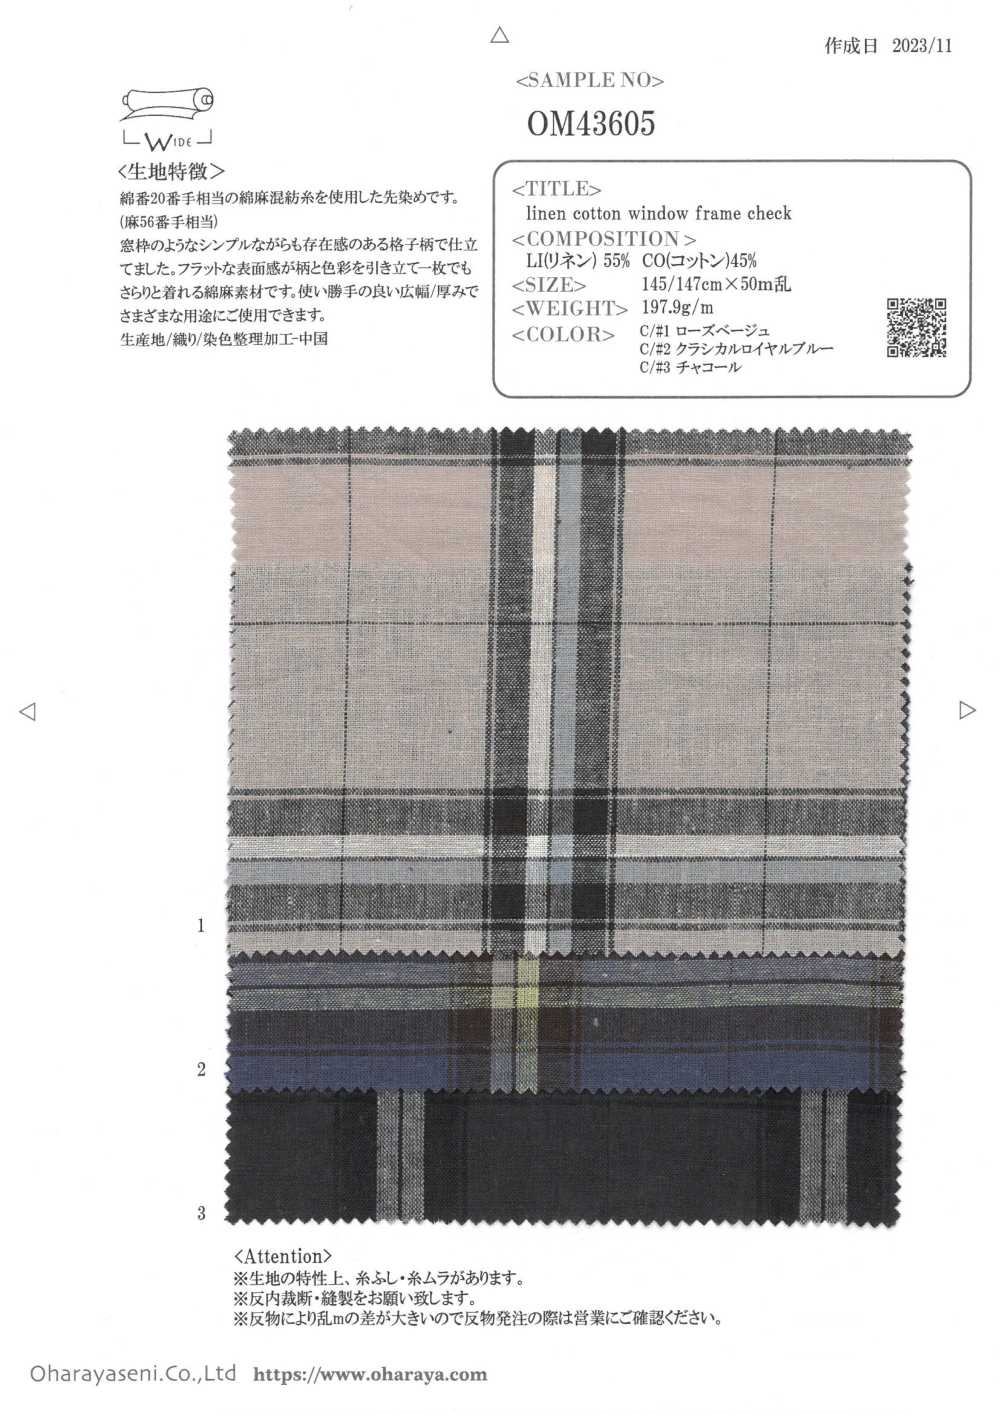 OM43605 Verificação Da Moldura Da Janela De Linho E Algodão[Têxtil / Tecido] Oharayaseni